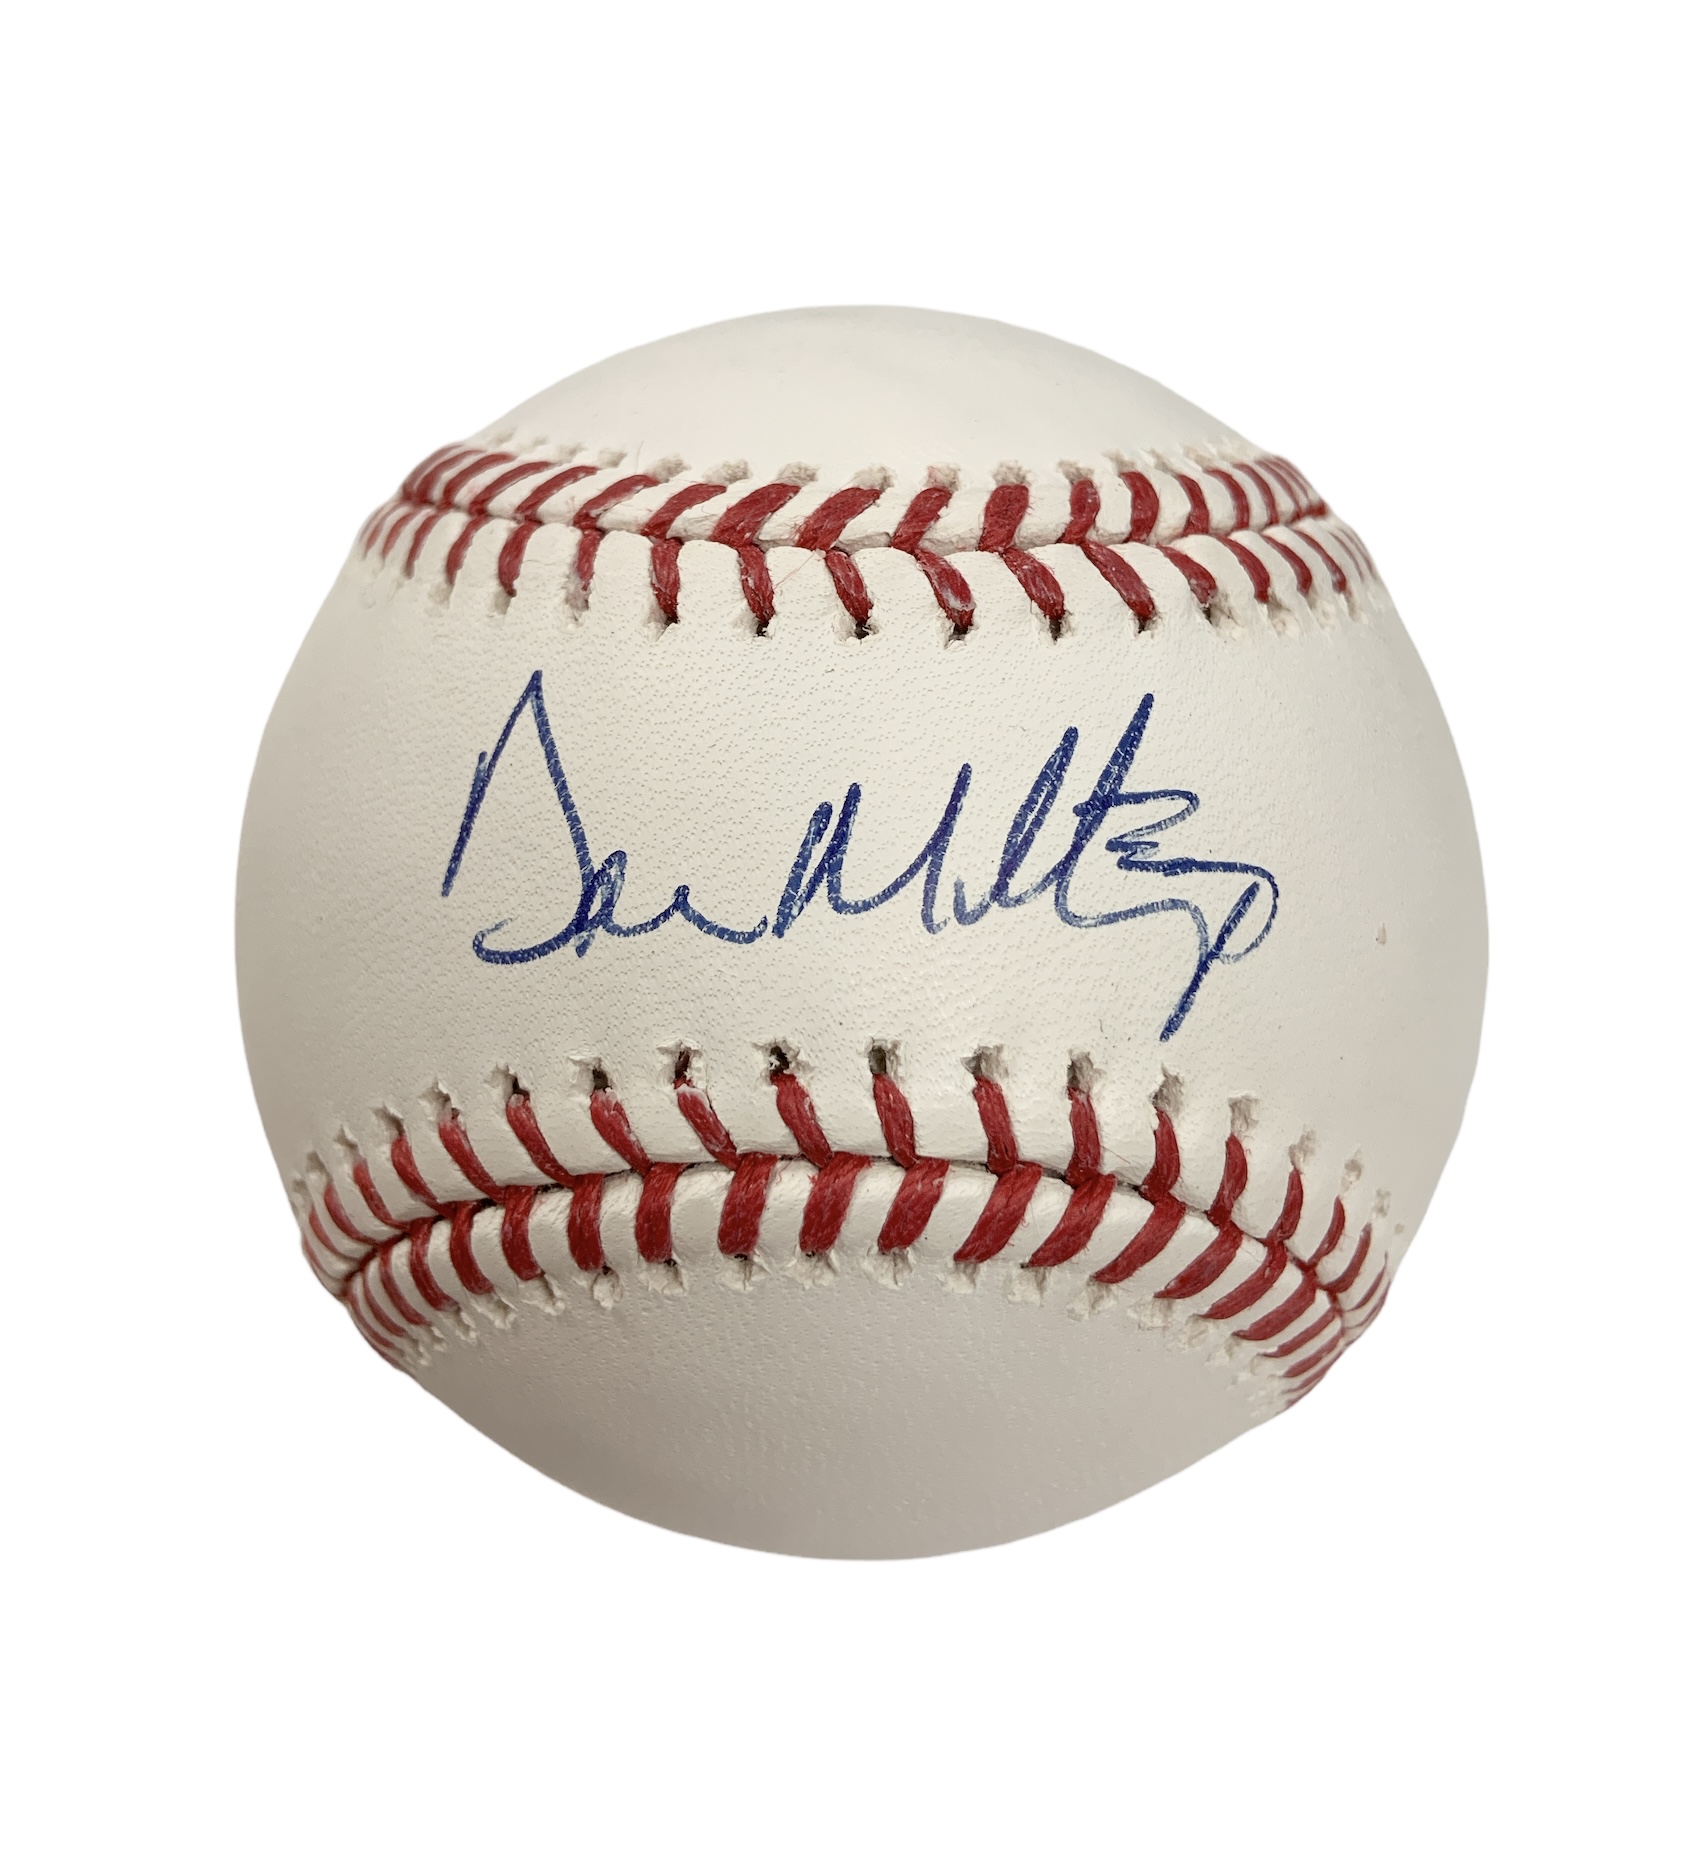 Don Mattingly Signed New York Yankees Rawlings Official Major League MLB  Baseball